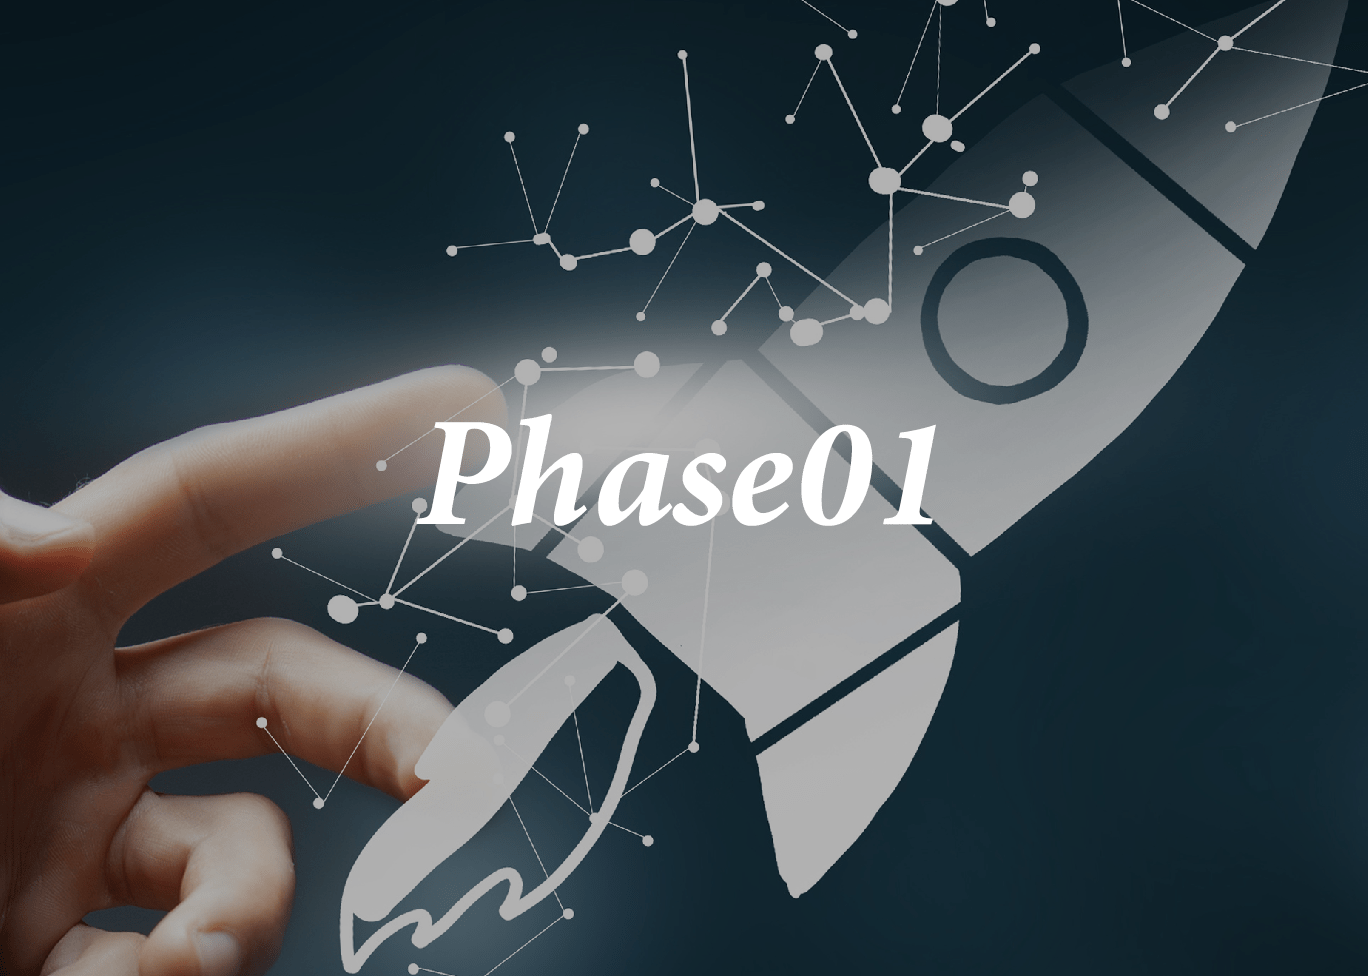 phase01